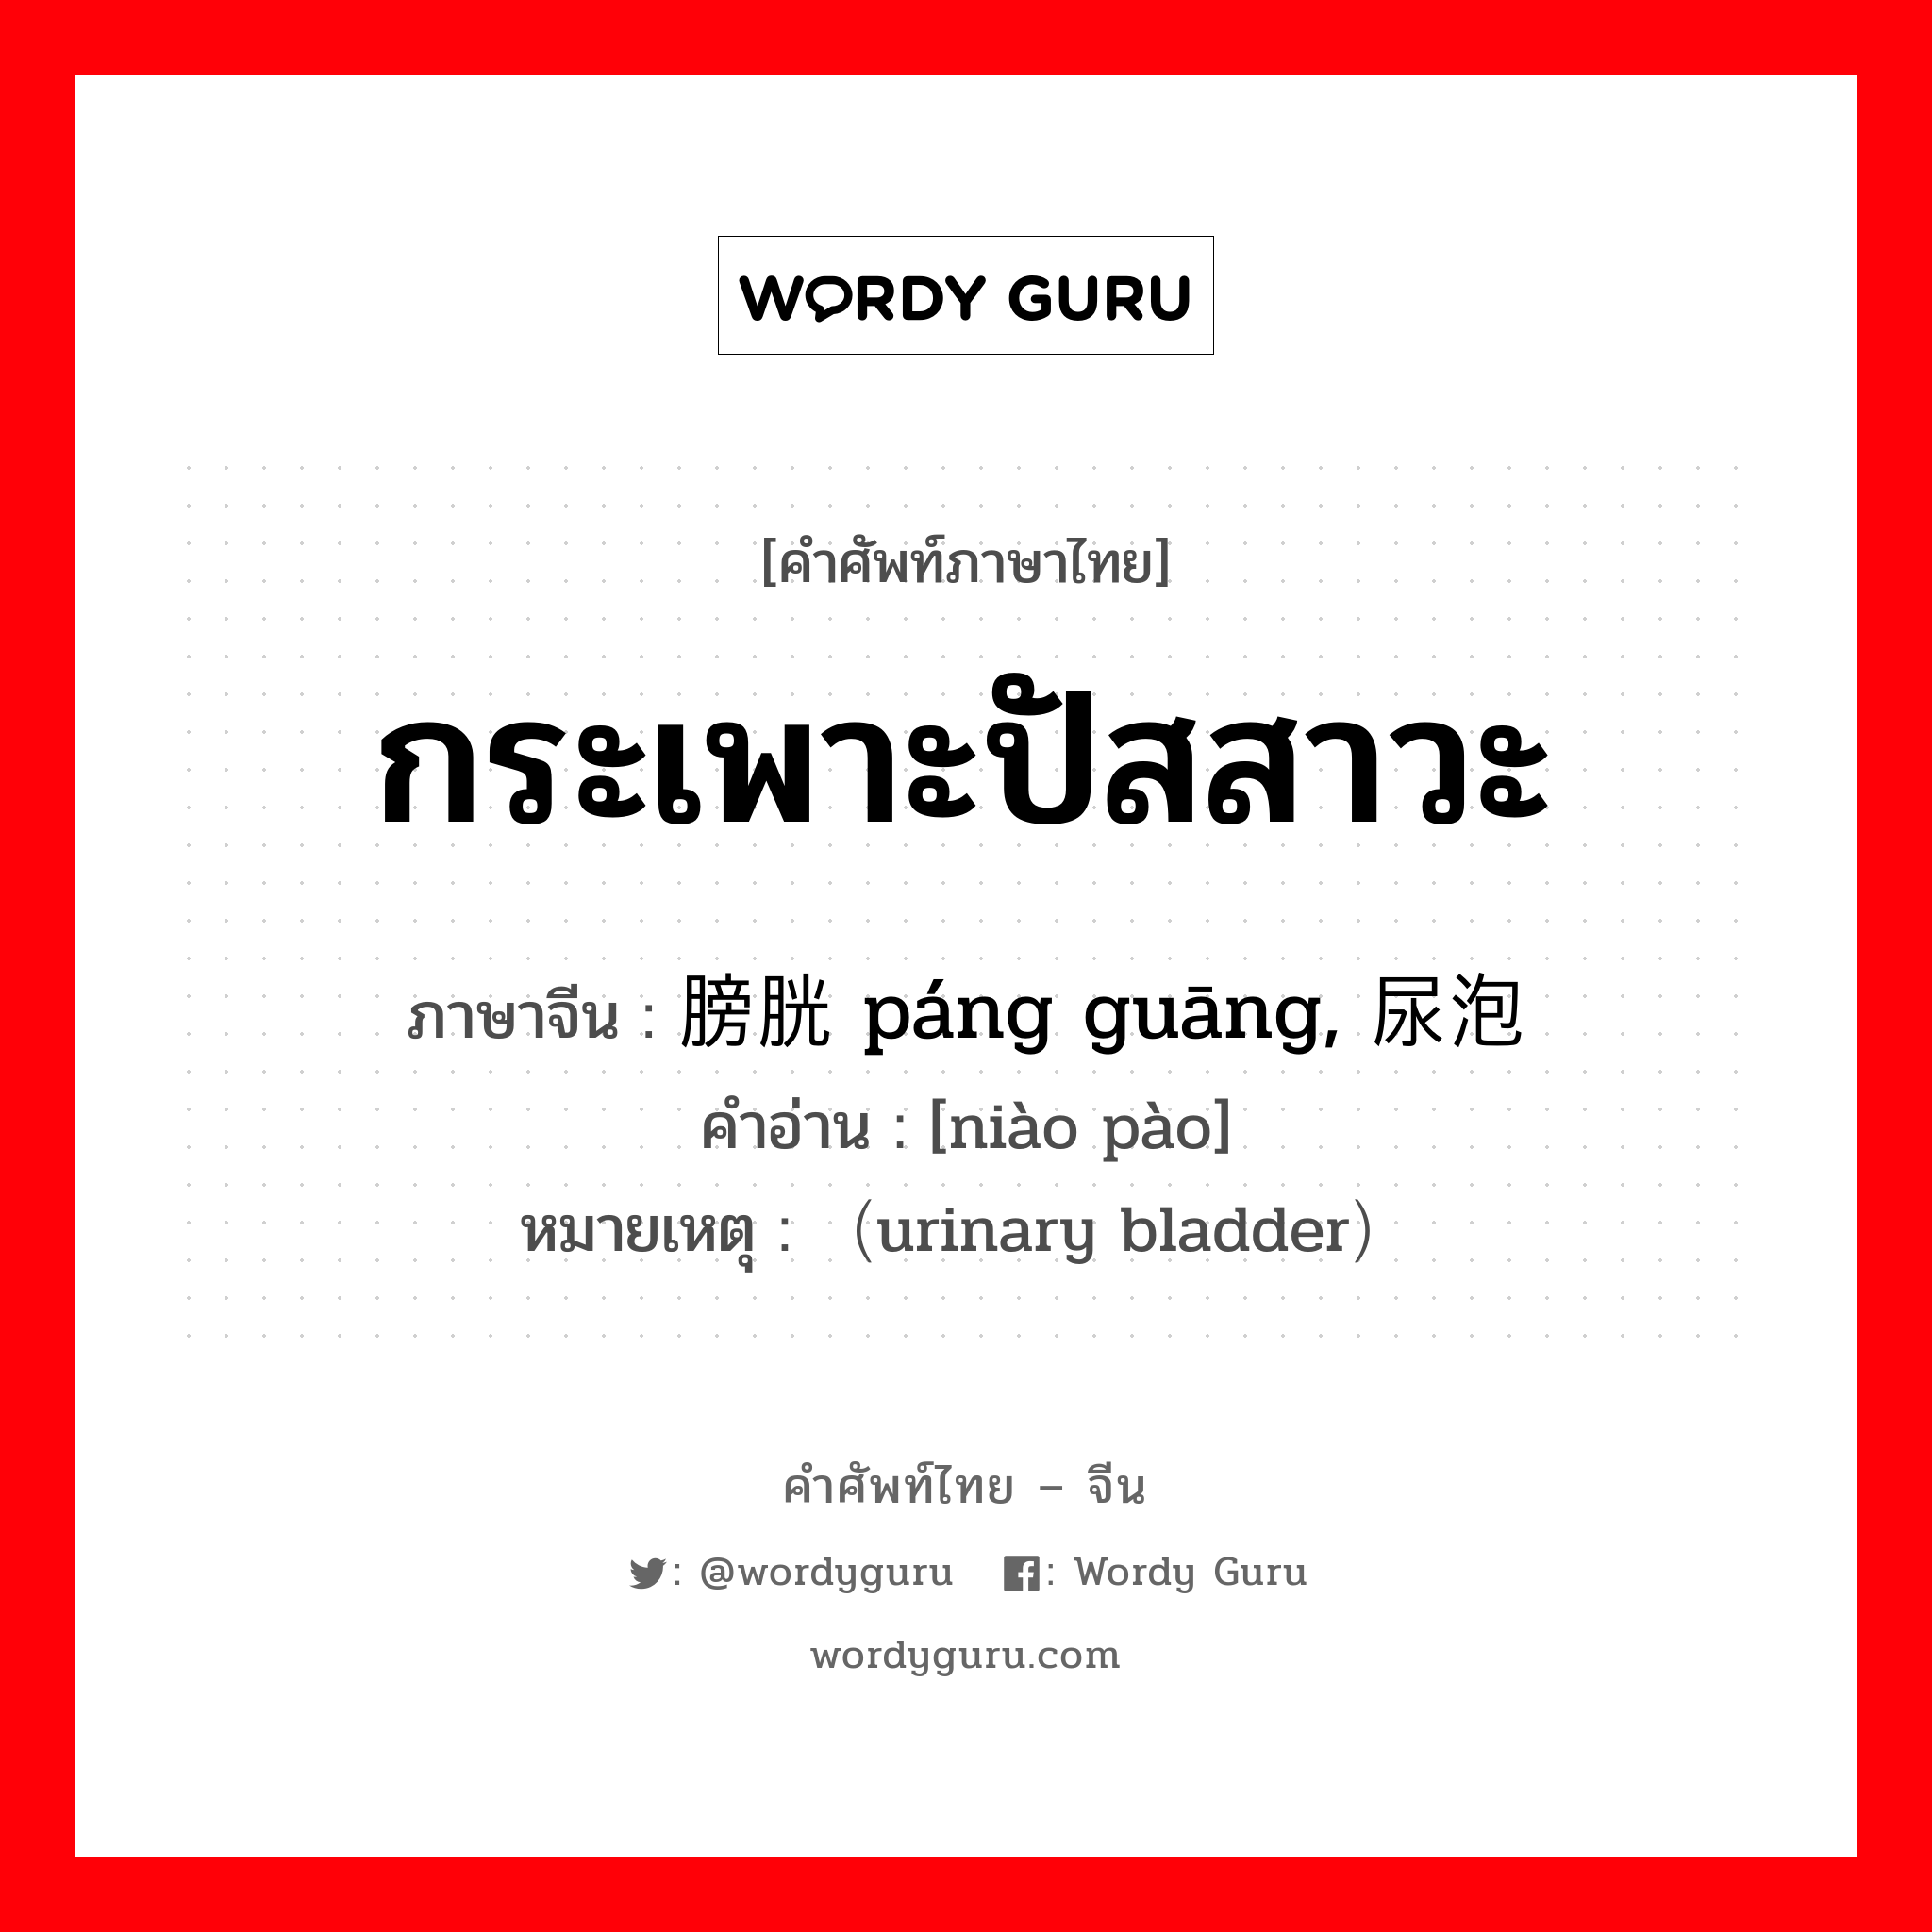 กระเพาะปัสสาวะ ภาษาจีนคืออะไร, คำศัพท์ภาษาไทย - จีน กระเพาะปัสสาวะ ภาษาจีน 膀胱 páng guāng, 尿泡 คำอ่าน [niào pào] หมายเหตุ （urinary bladder）